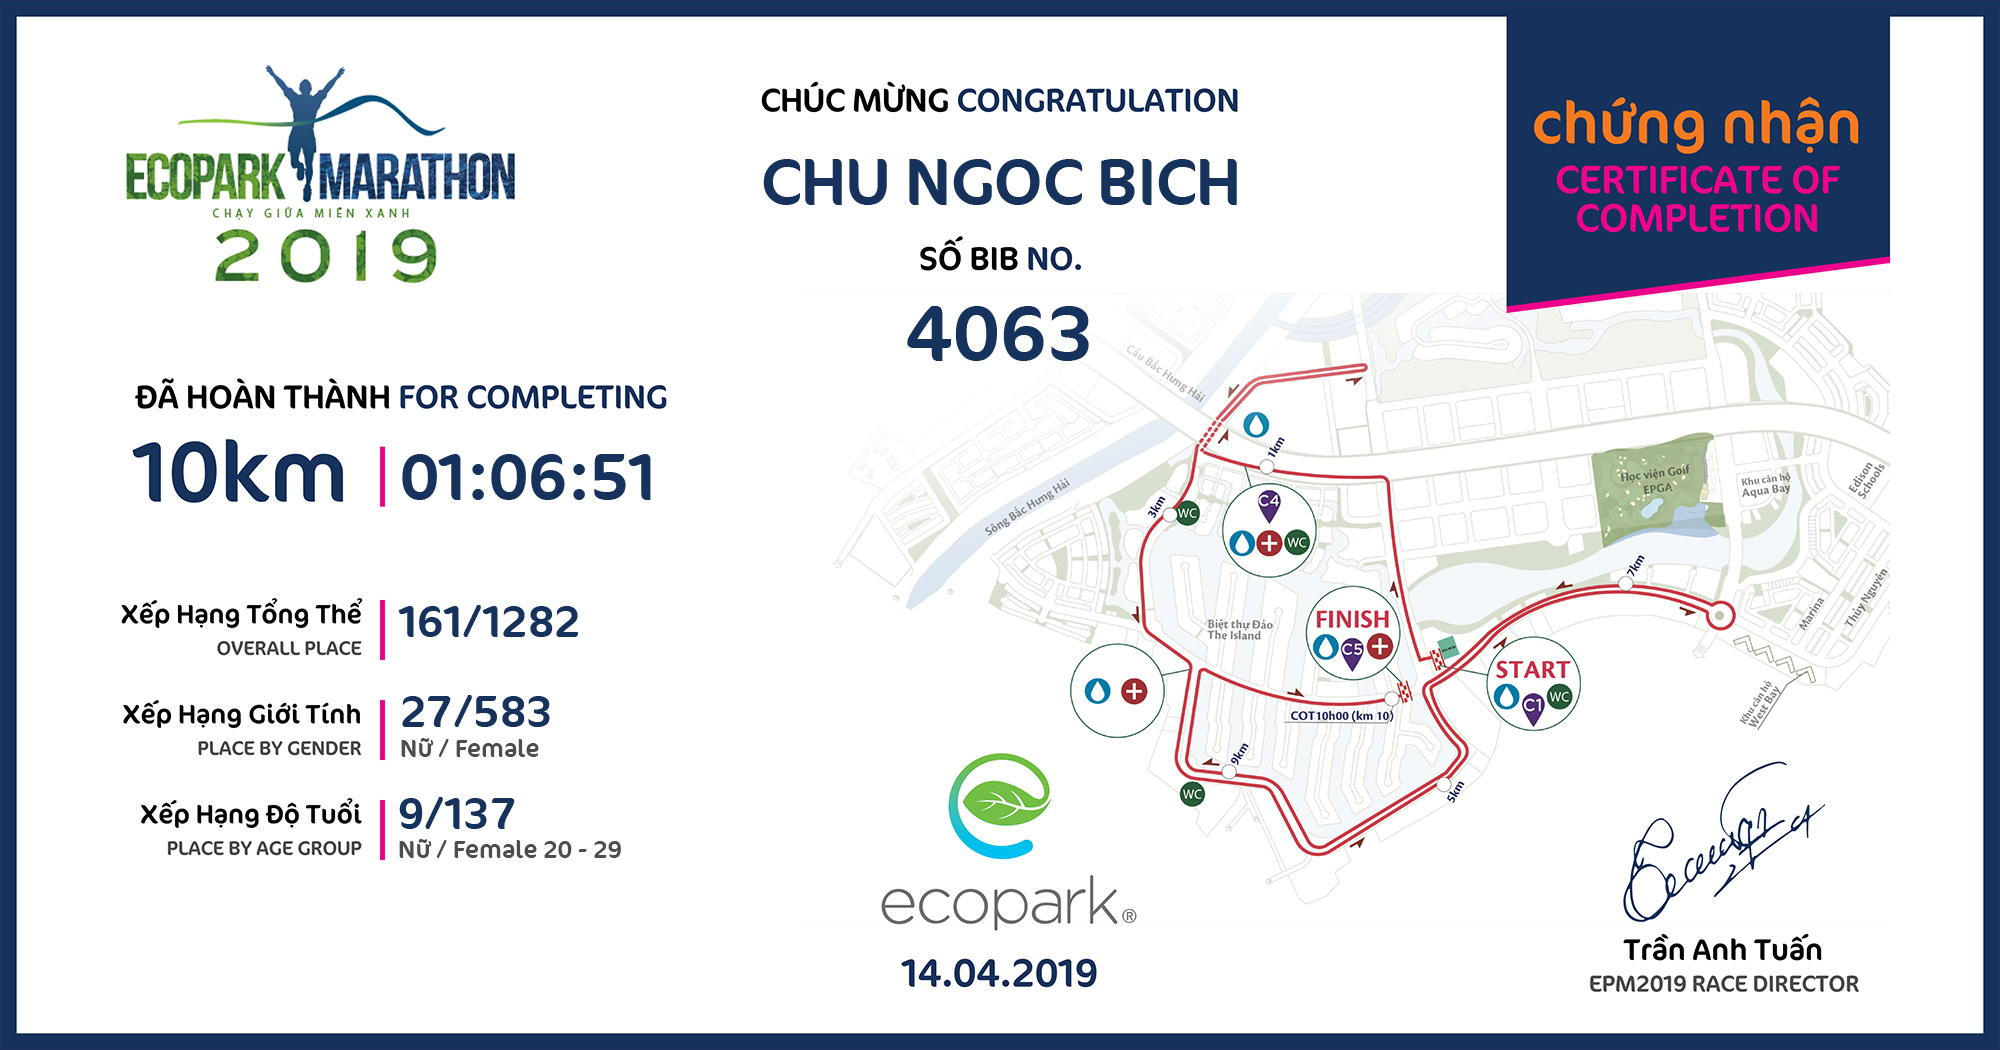 4063 - Chu Ngoc Bich